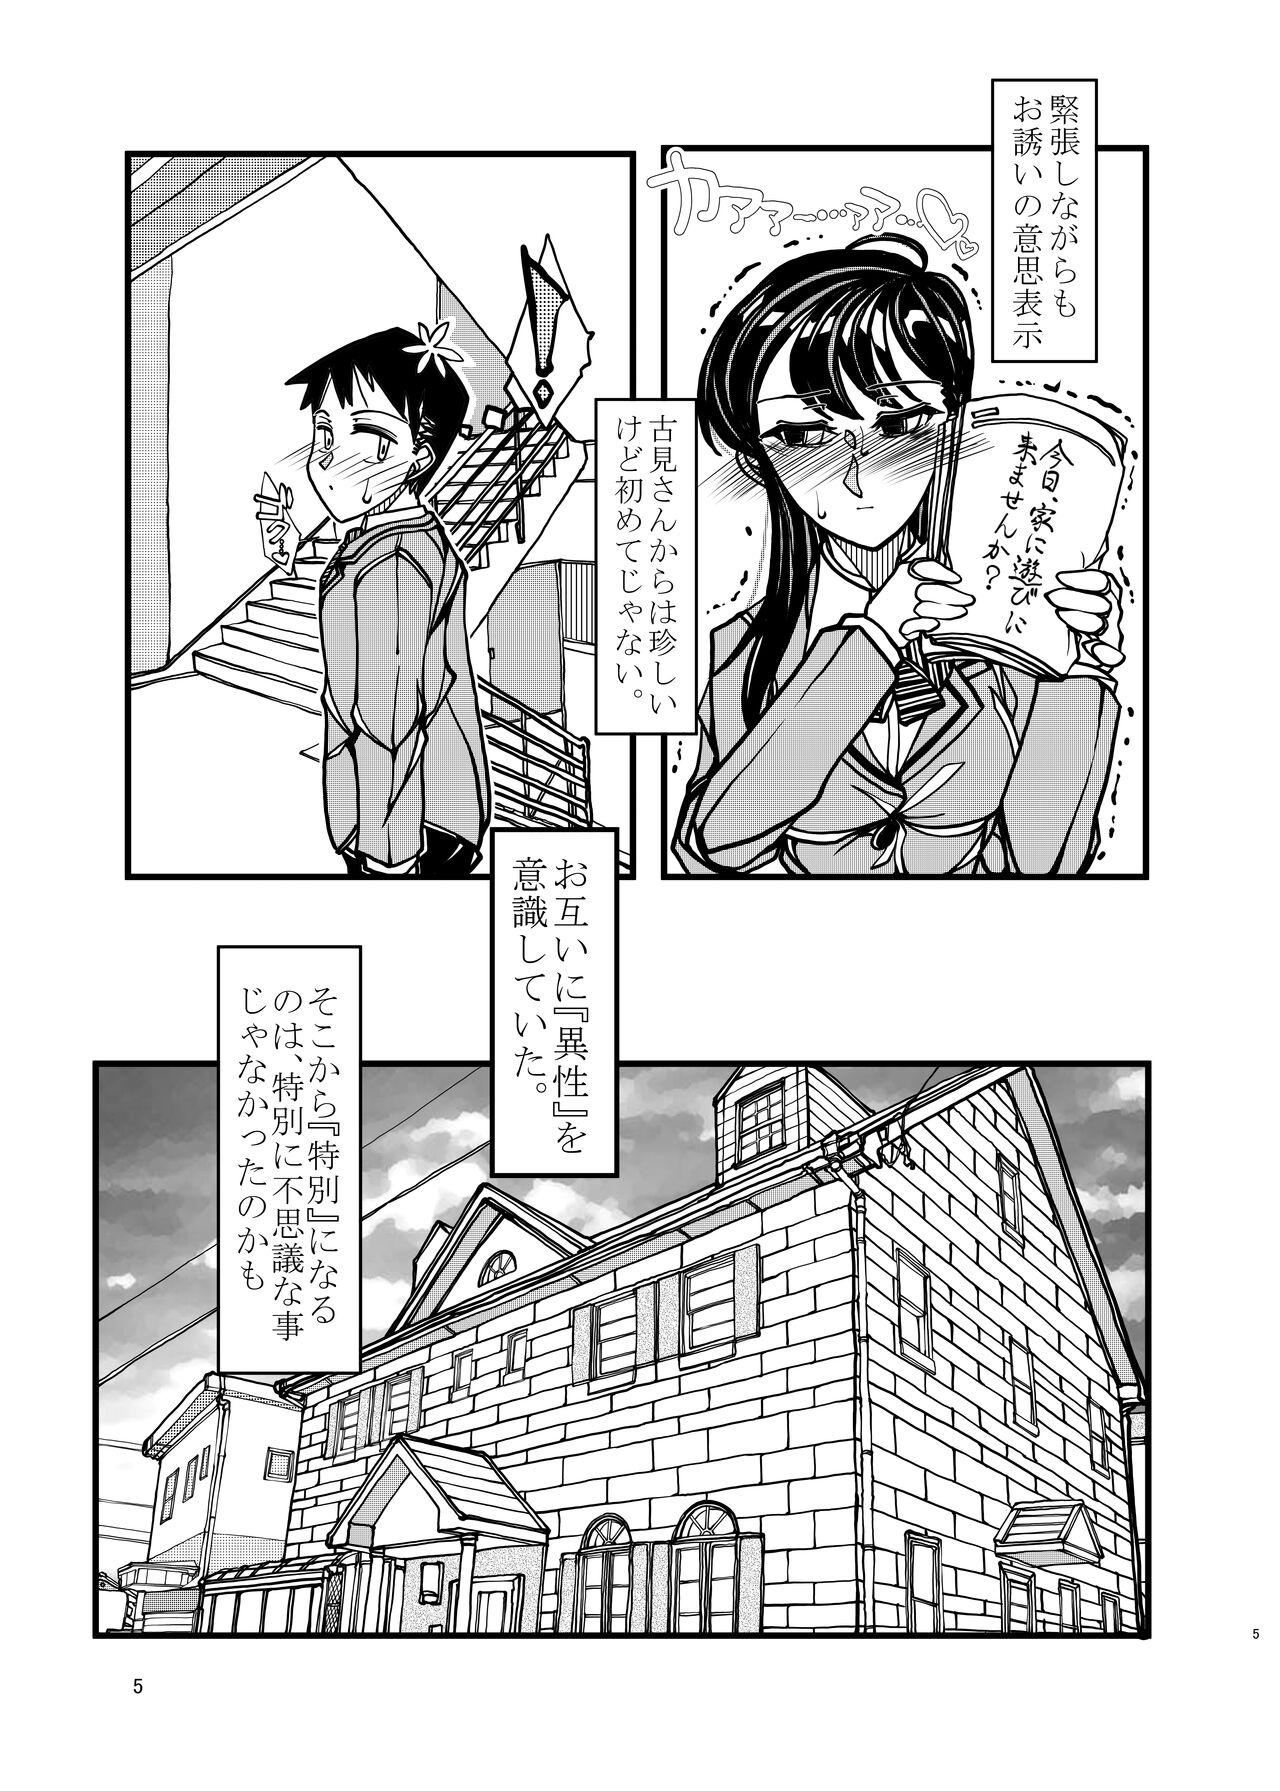 Tites Komyushou na Kanojo to Mama - Komi-san wa komyushou desu. Nudes - Page 5